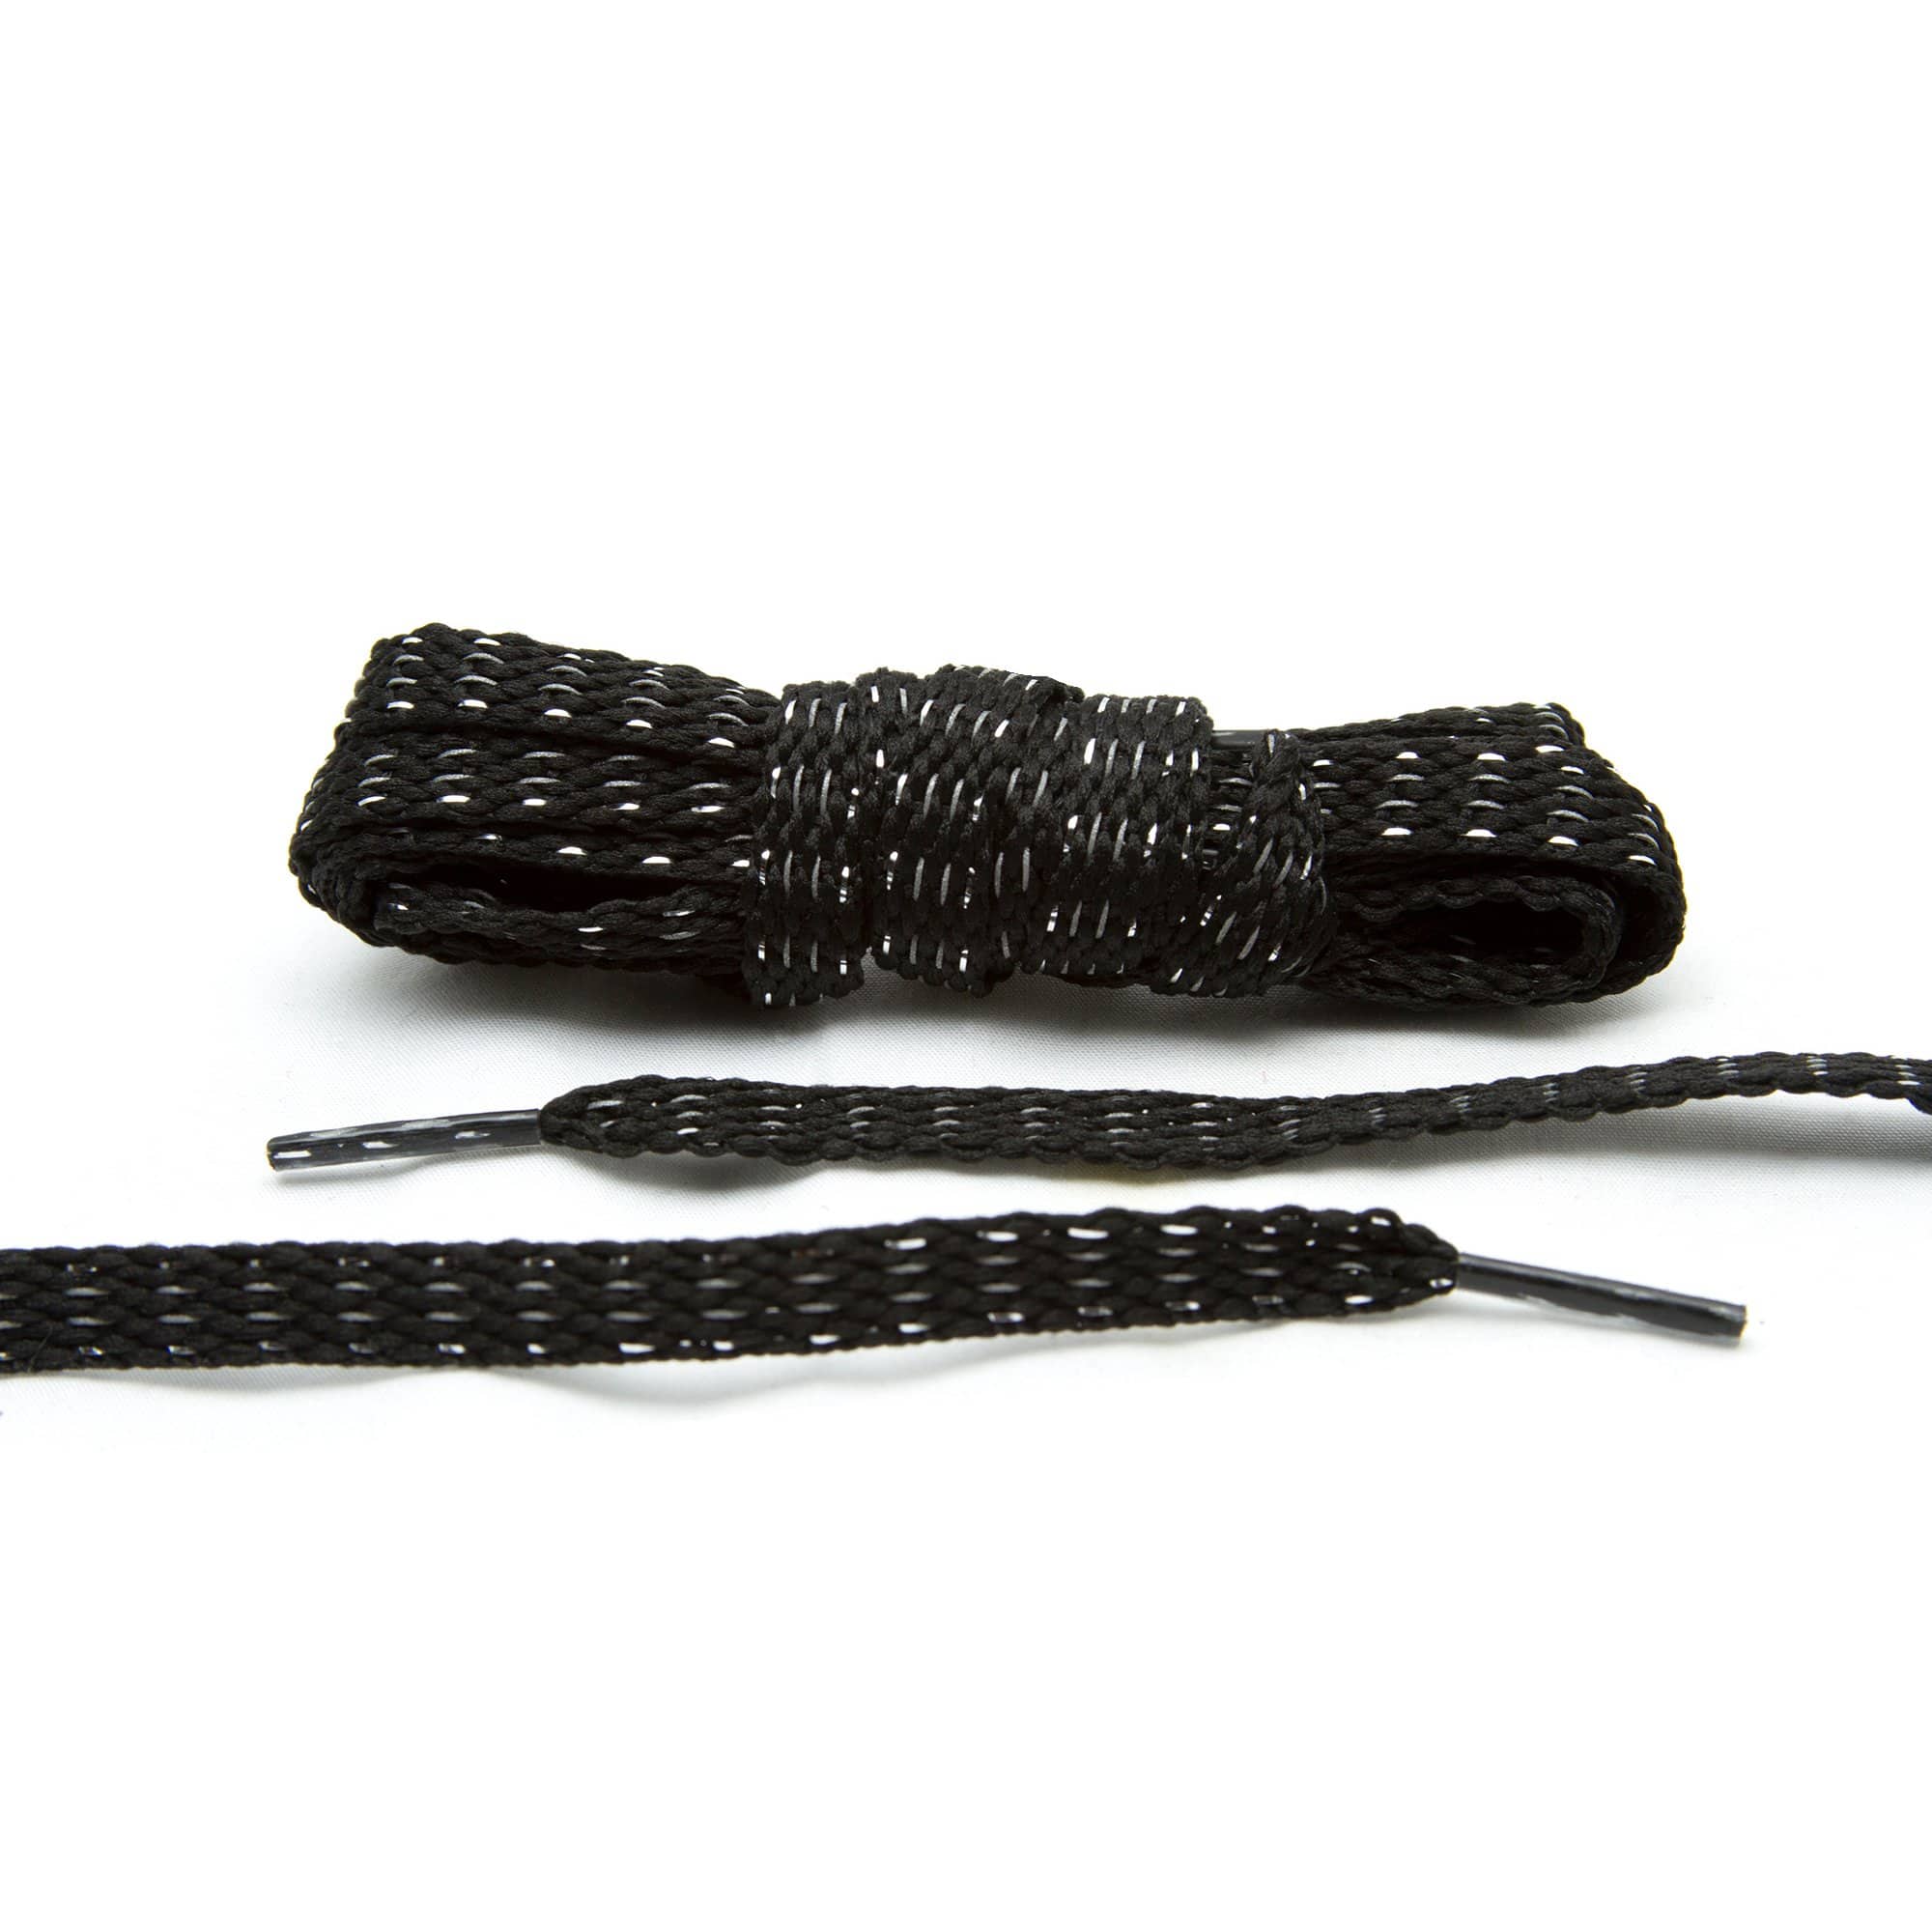 black shoe laces